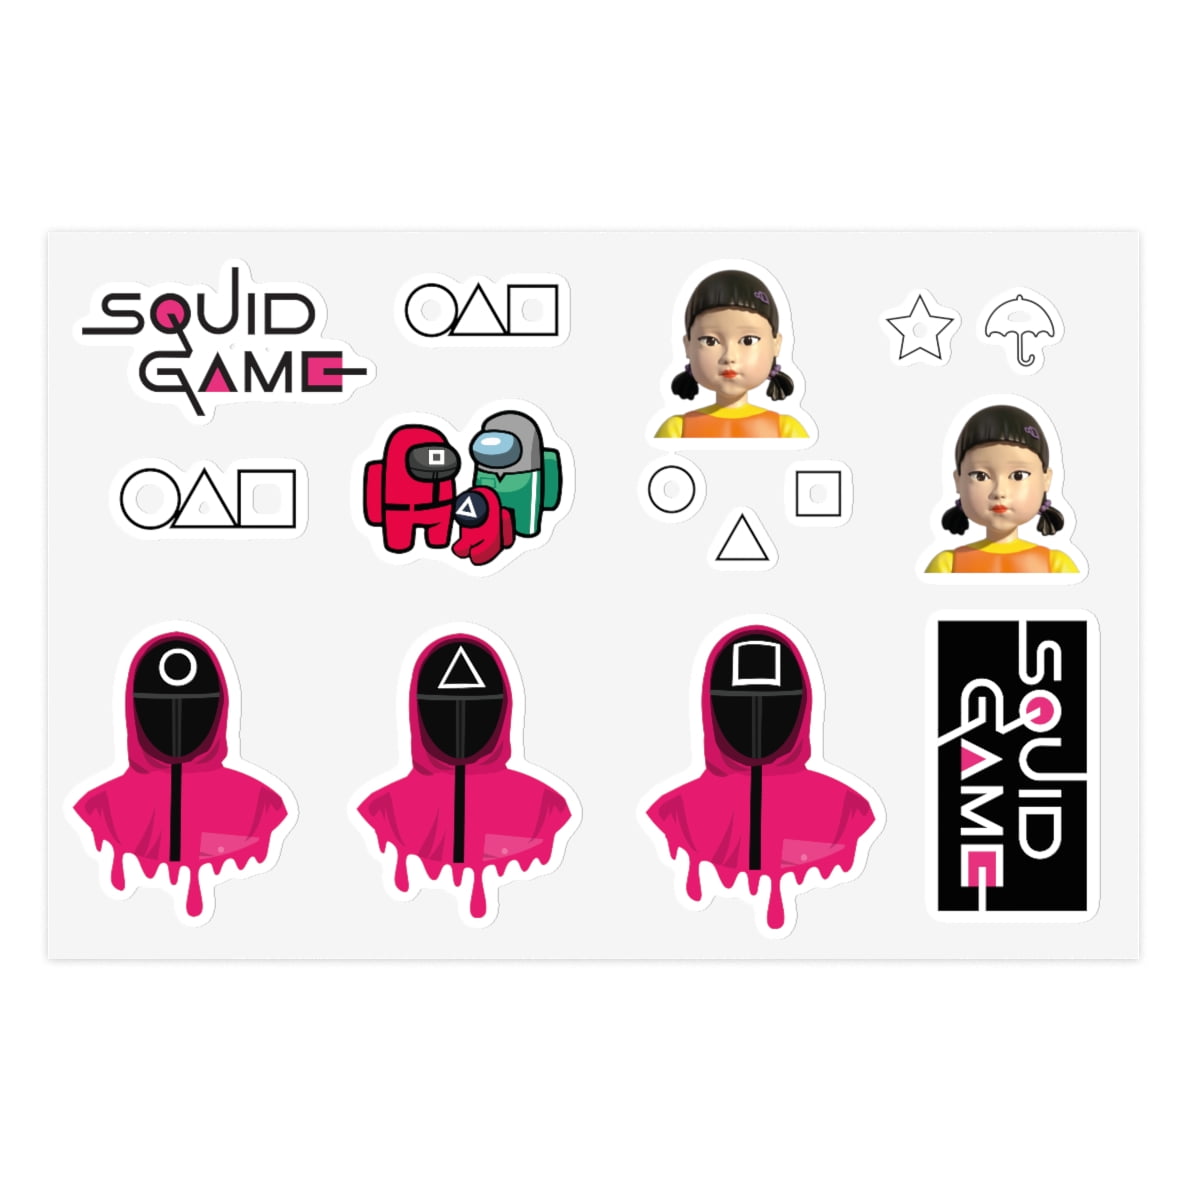 squid game sticker